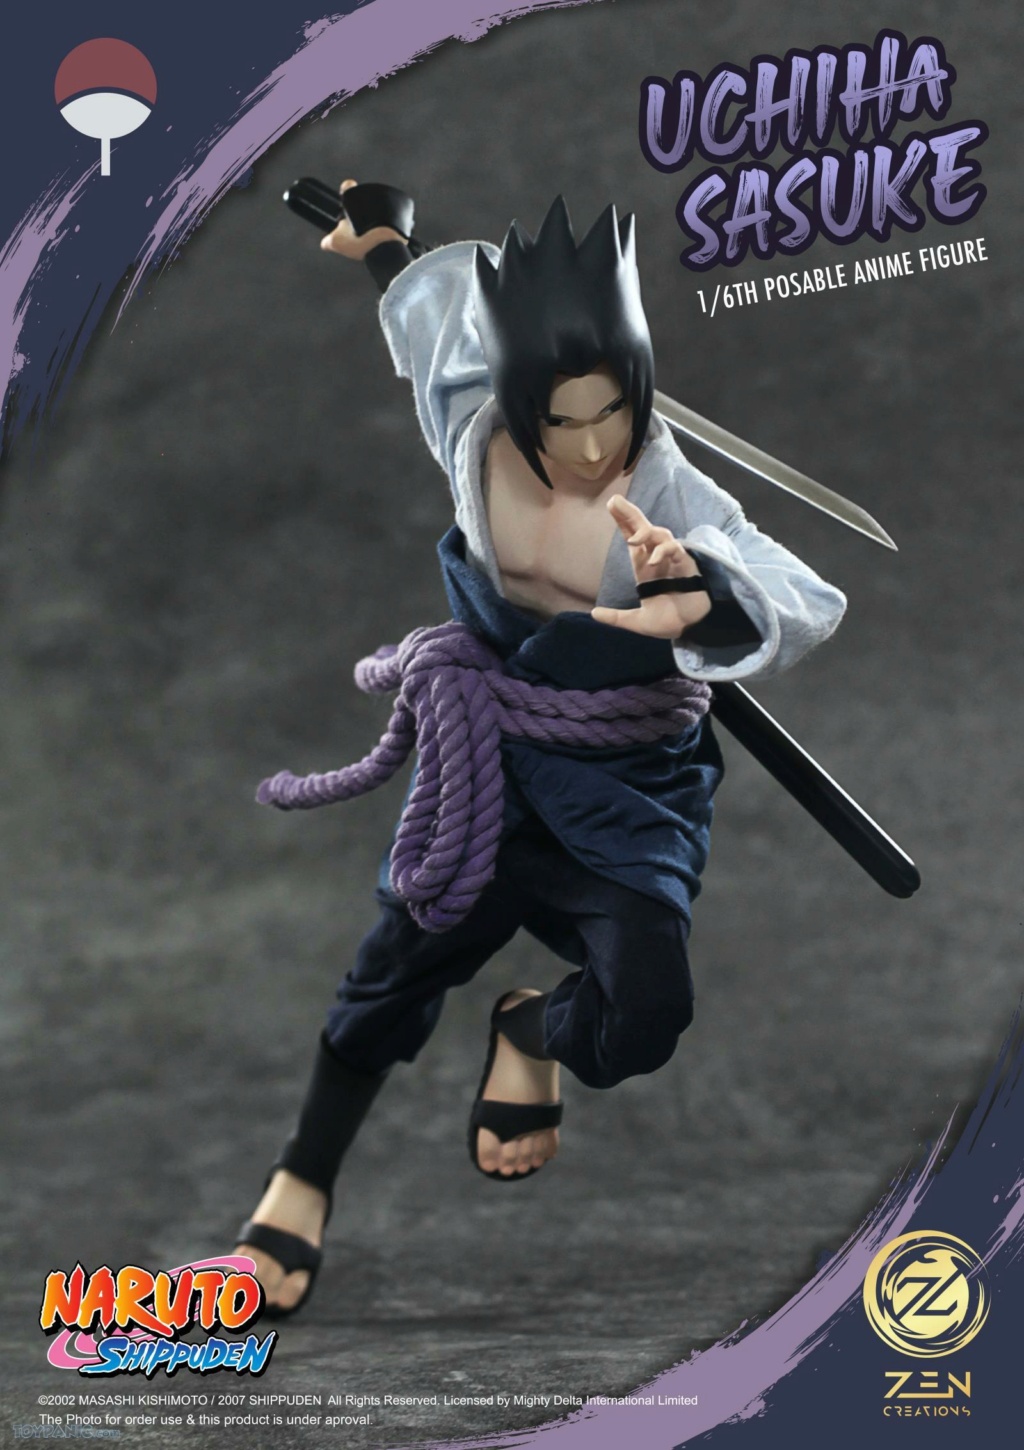 NarutoShippuden - NEW PRODUCT: Zen Creations: PAF003 1/6 Scale Sasuke Uchiha Anime Figure 14620228